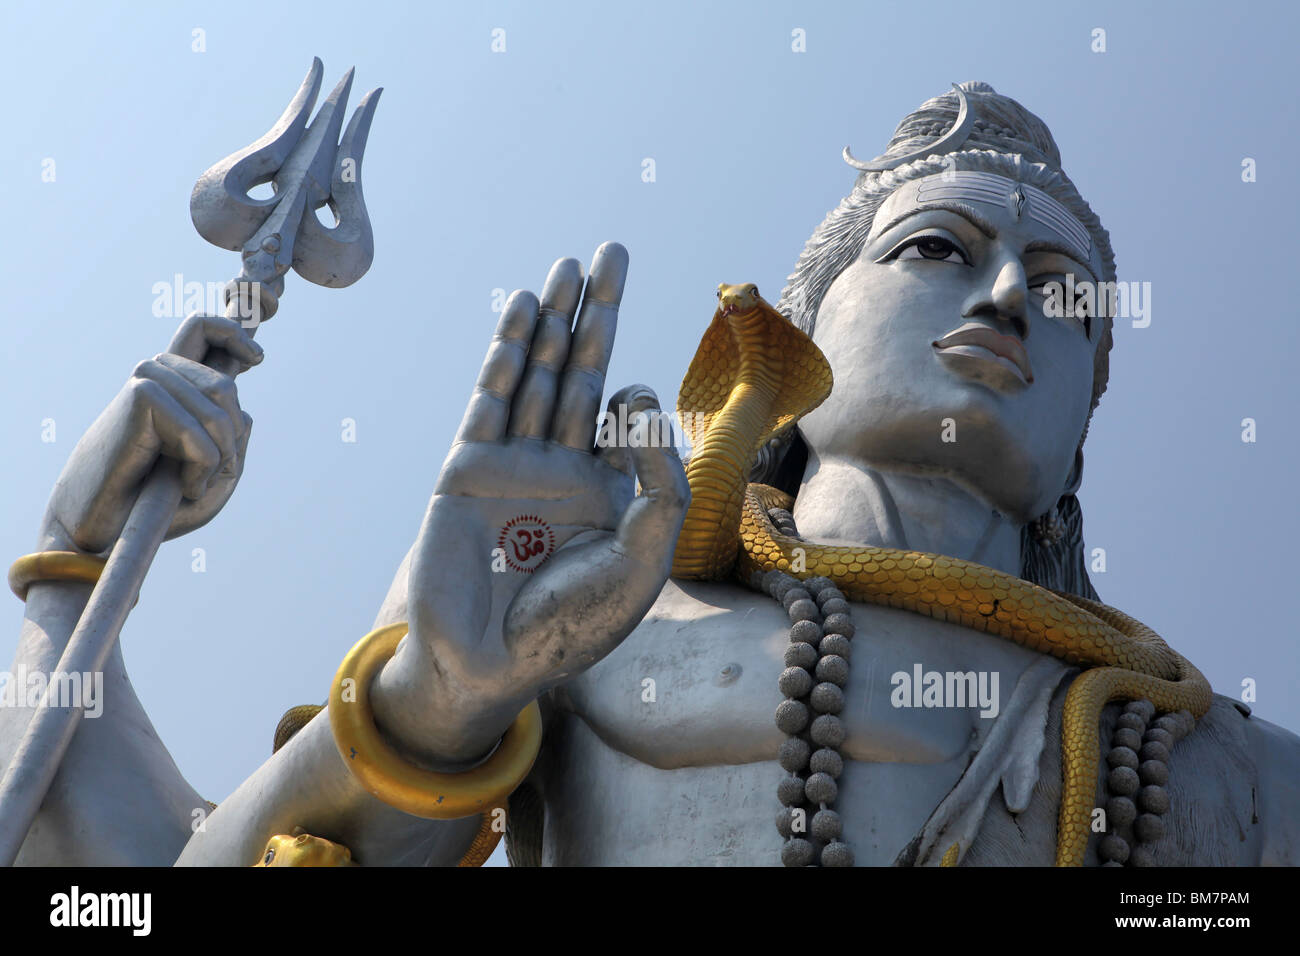 The worlds largest statue of Hindu God, Lord Shiva located in Murudeshwara or Murudeshwar in Karnataka, India. Stock Photo